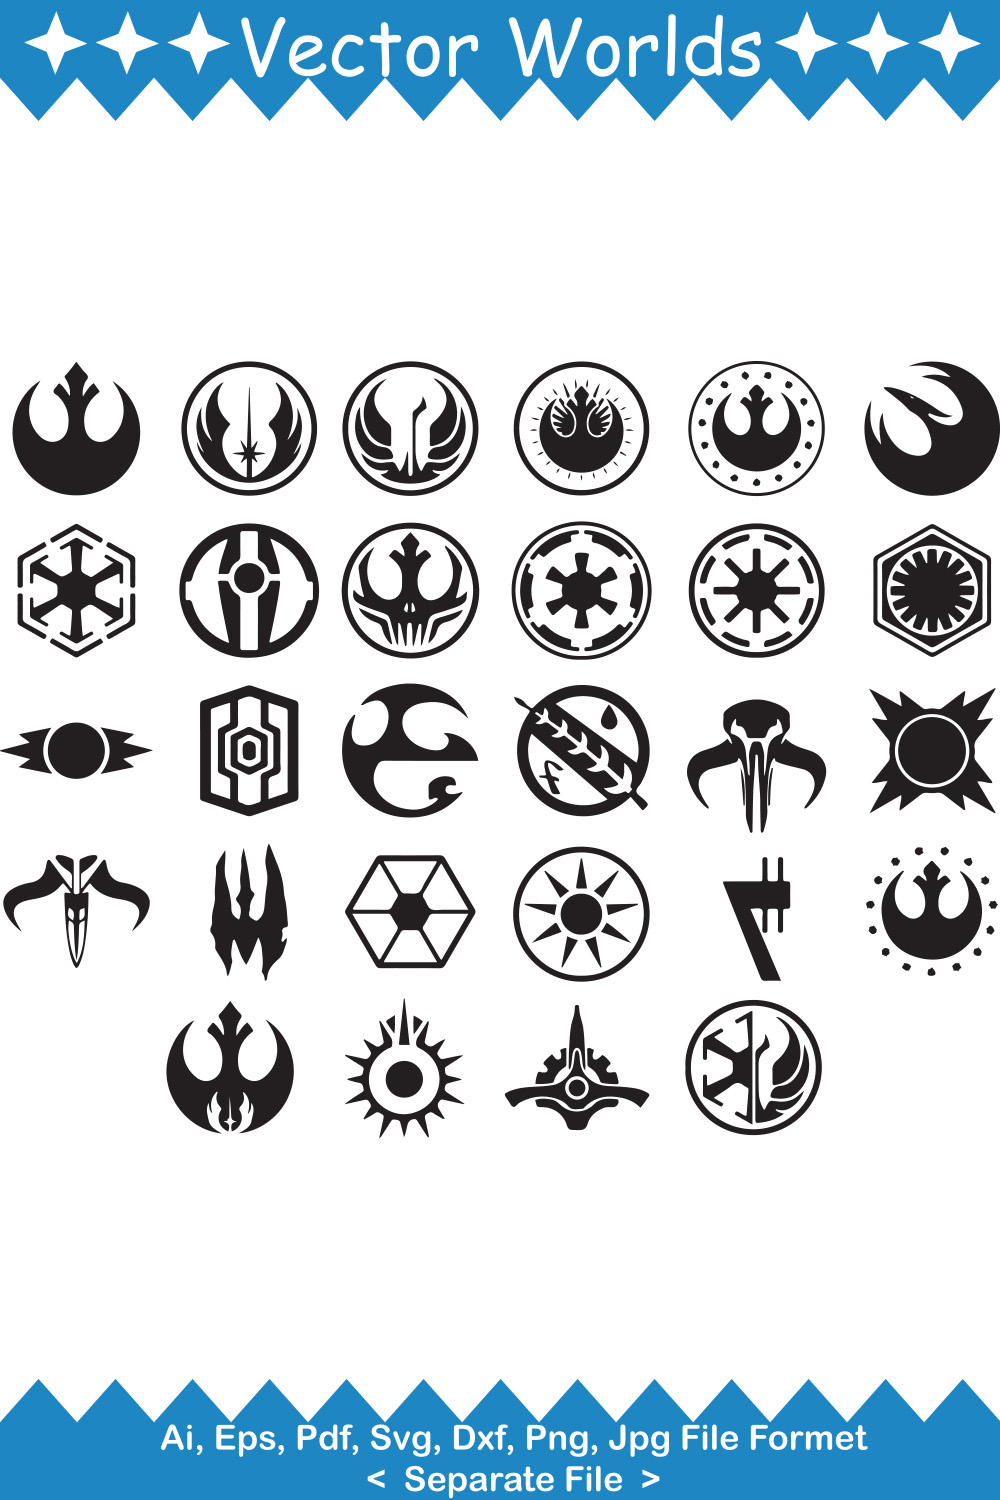 Star Wars SVG Vector Design pinterest preview image.